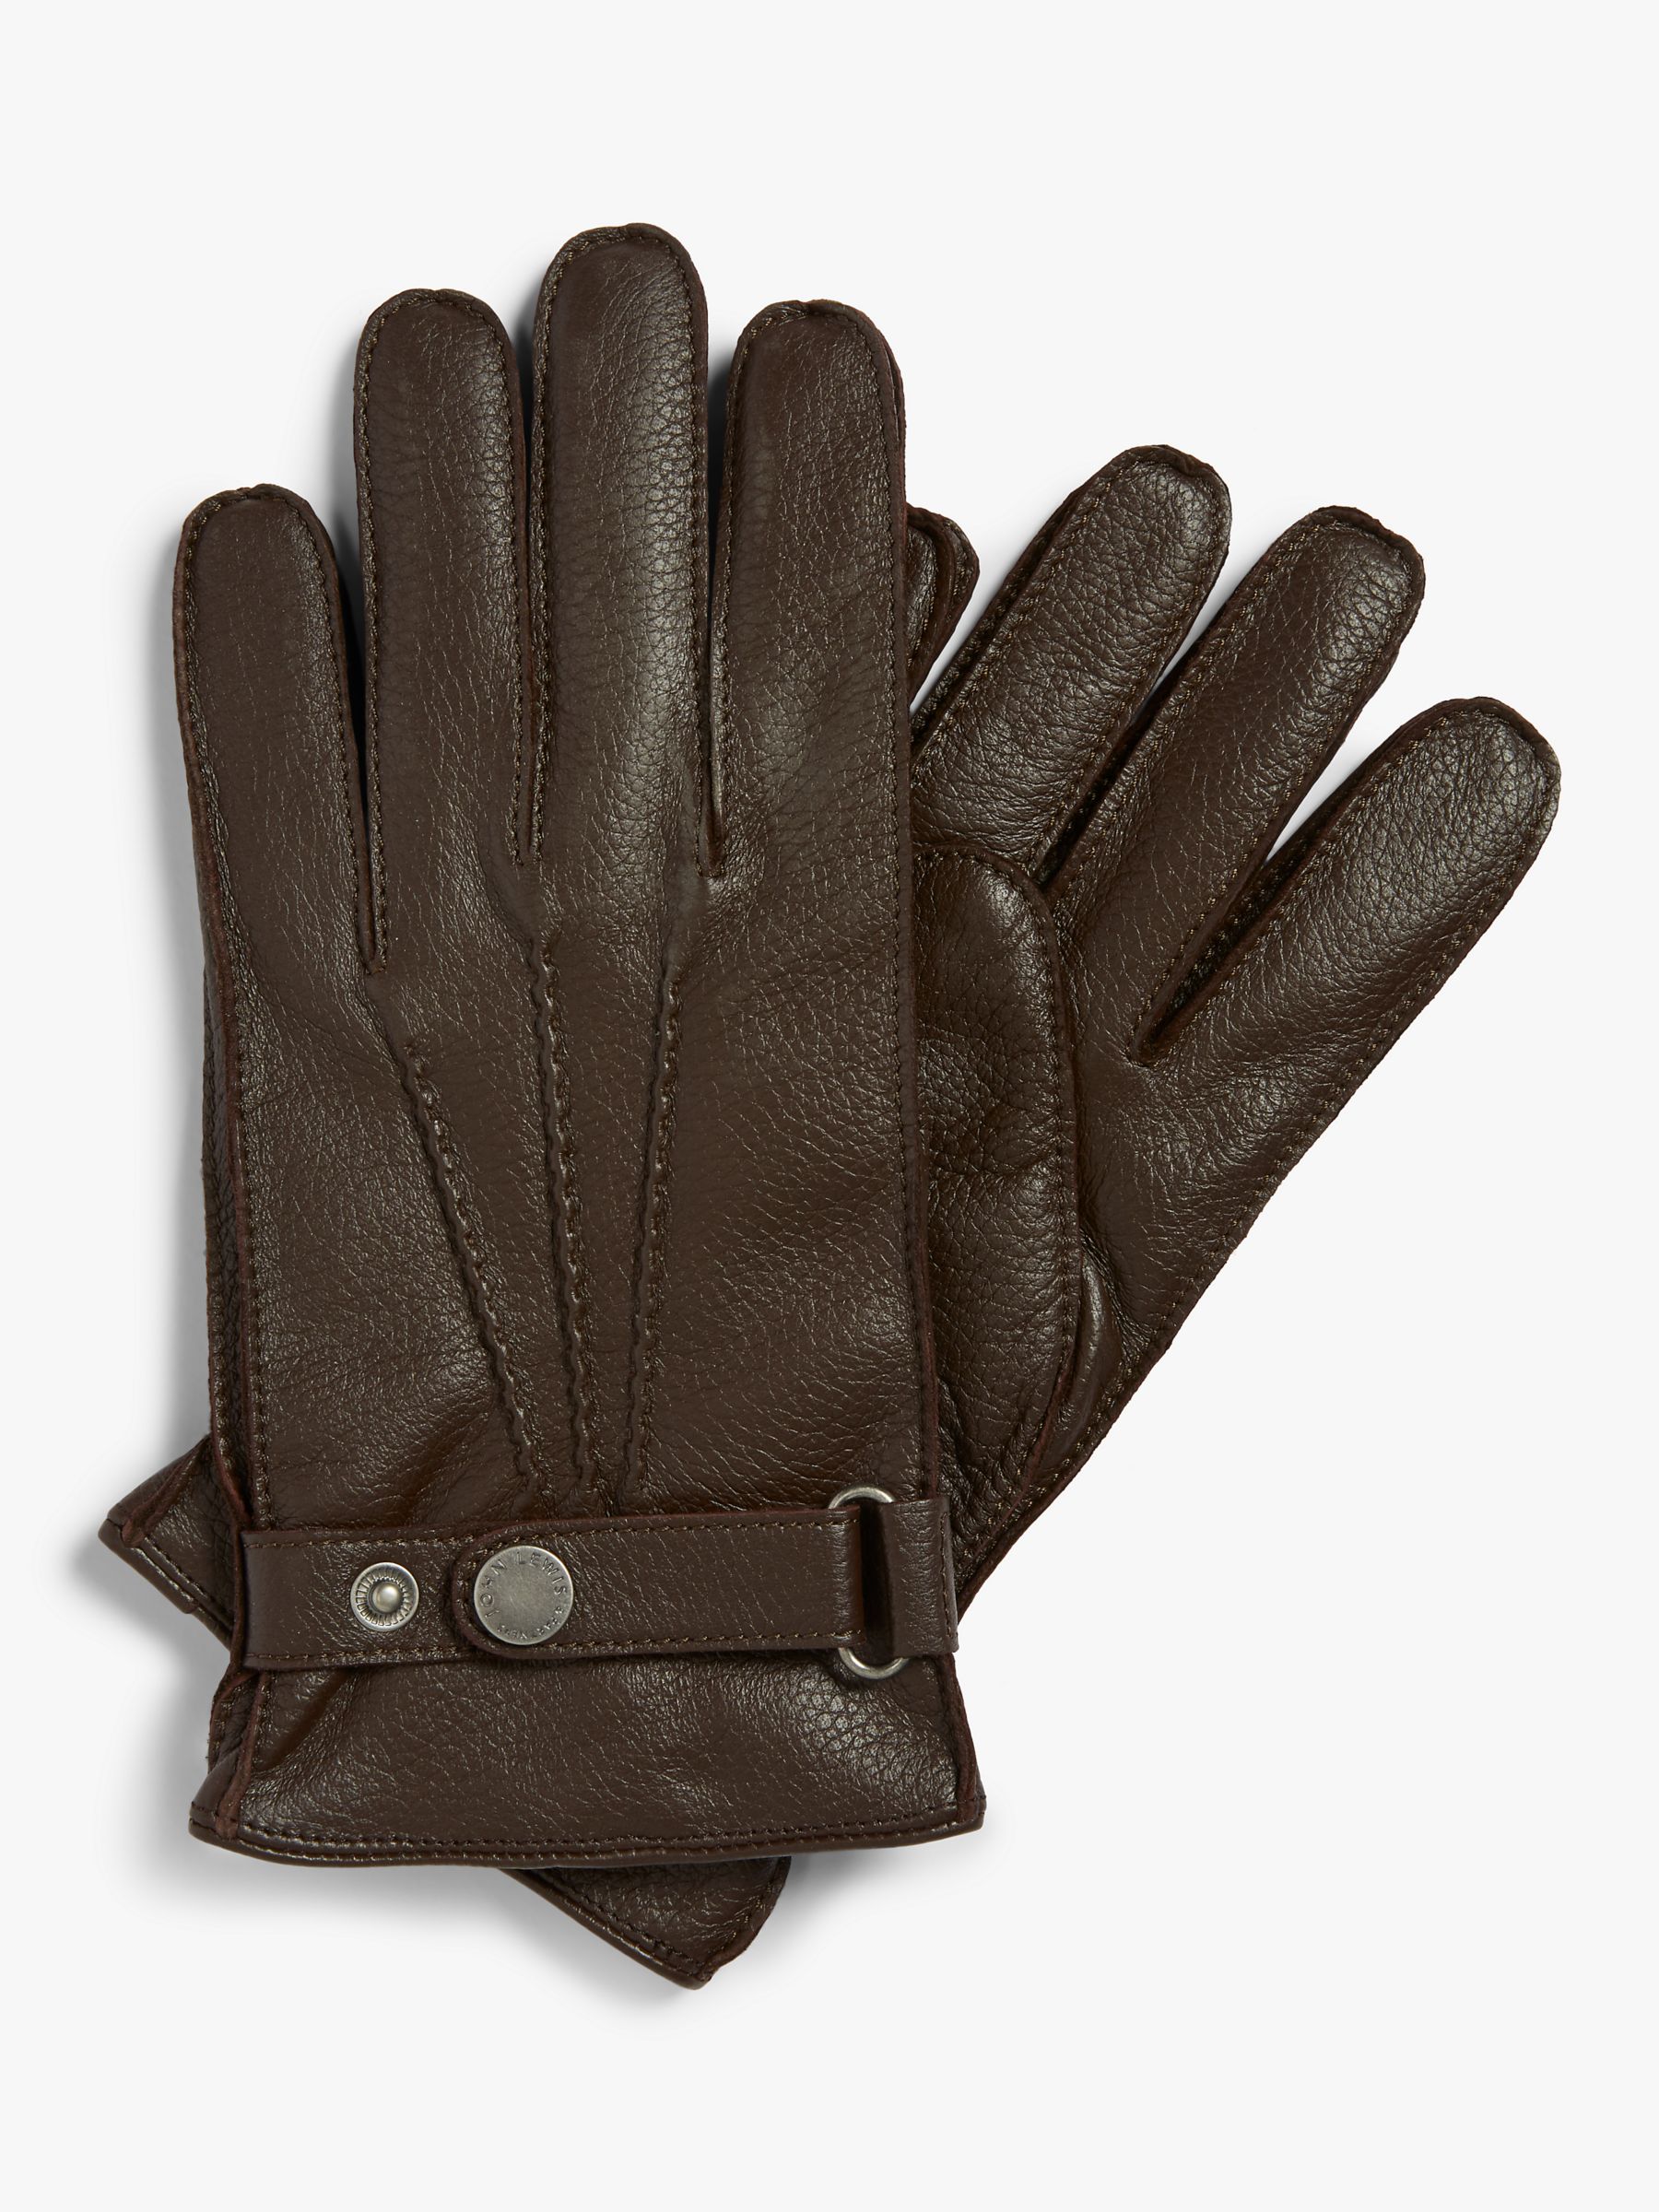 Премиальные кожаные перчатки John Lewis, коричневый 1 пара кожаные рабочие перчатки класса премиум